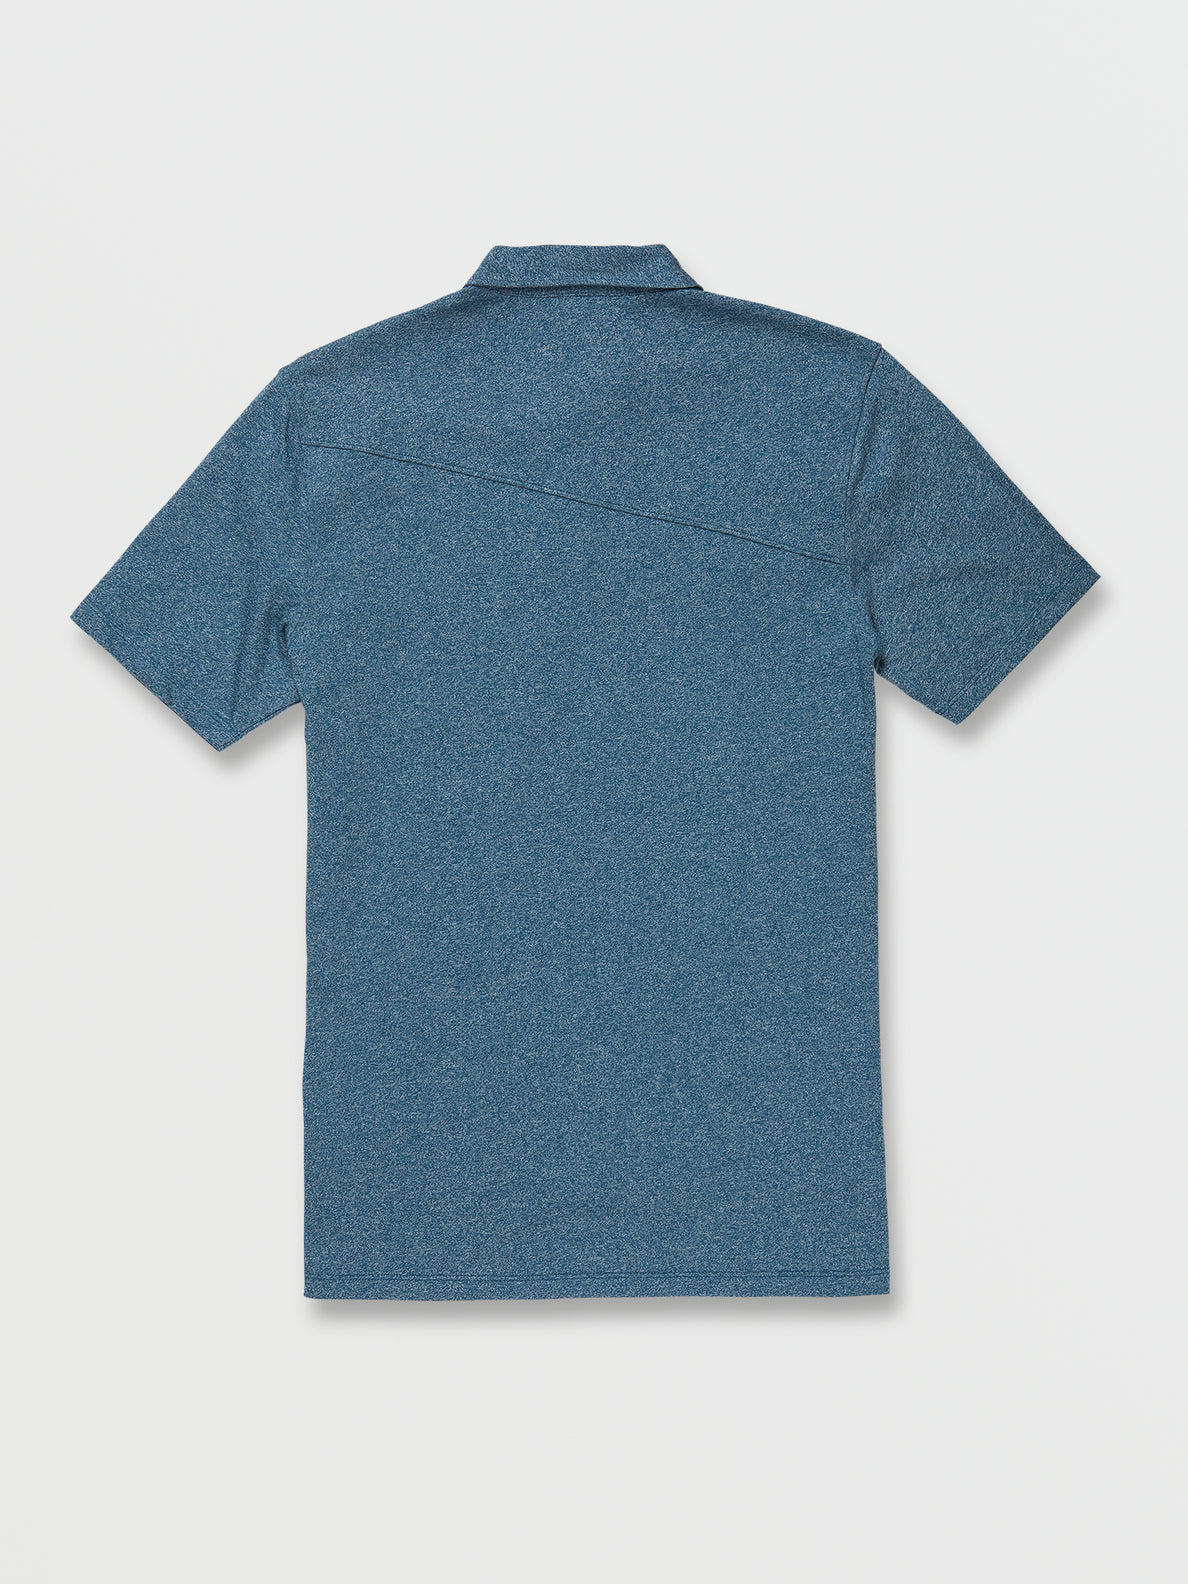 Wowzer Polo Short Sleeve Shirt - Aged Indigo